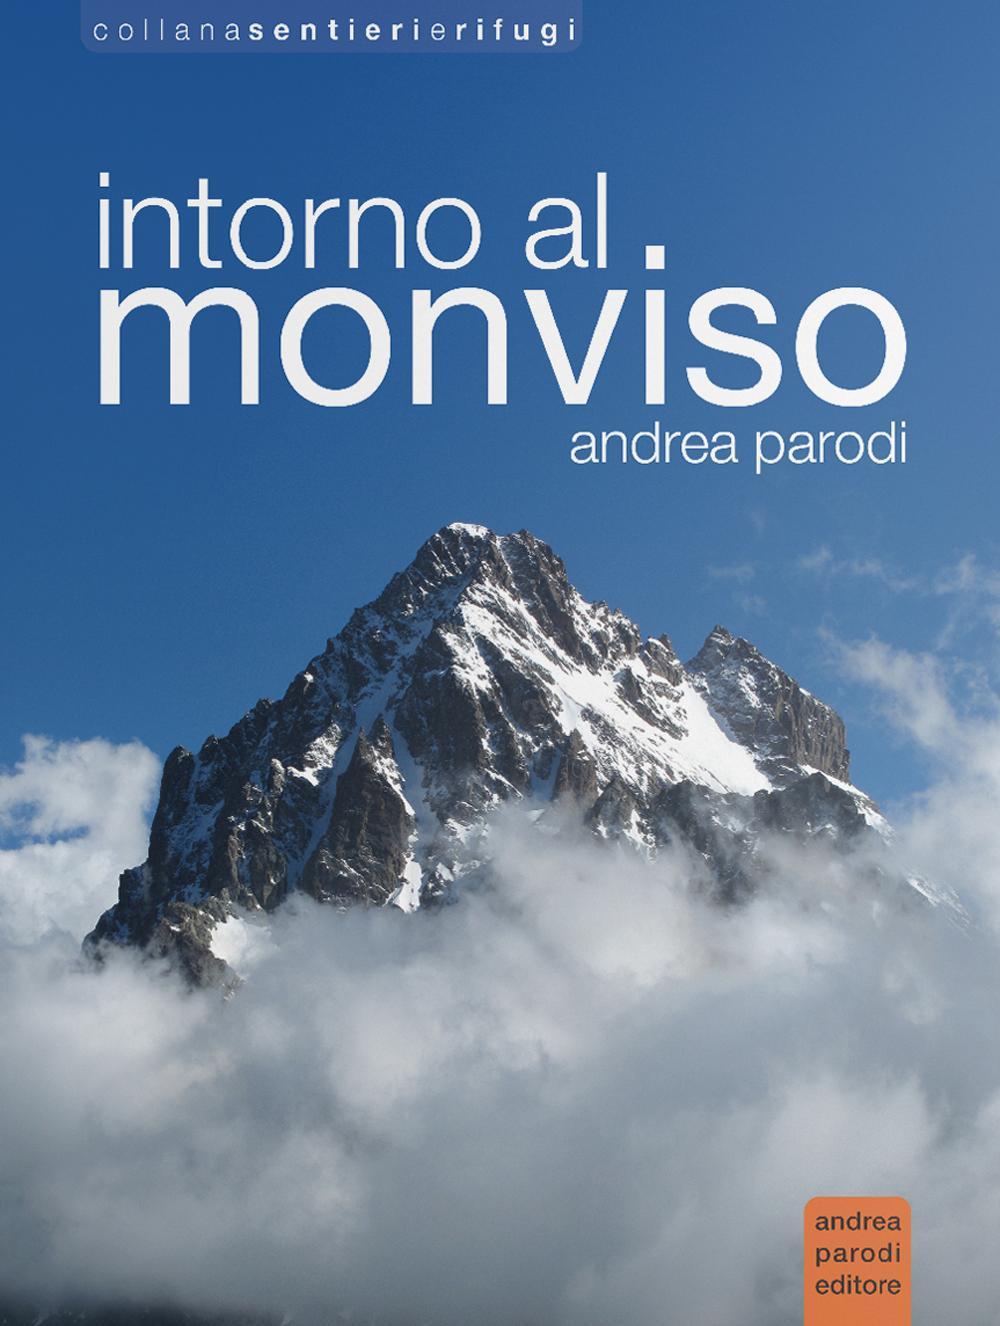 Libri Andrea Parodi - Intorno Al Monviso NUOVO SIGILLATO, EDIZIONE DEL 01/04/2016 SUBITO DISPONIBILE